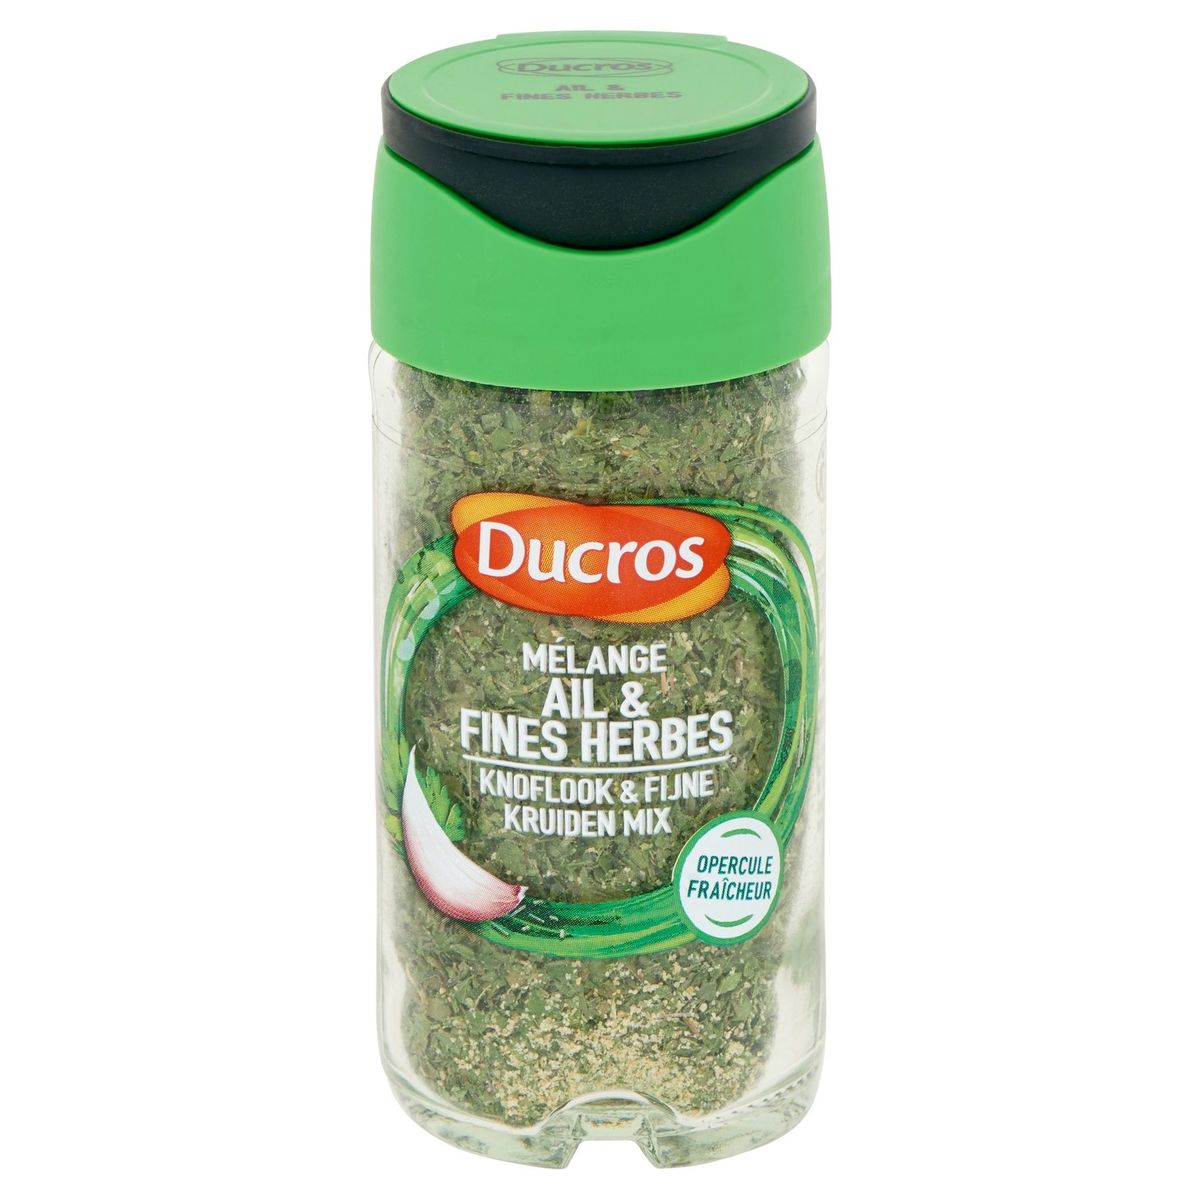 Ducros Mélange Ail & Fines Herbes 24 g